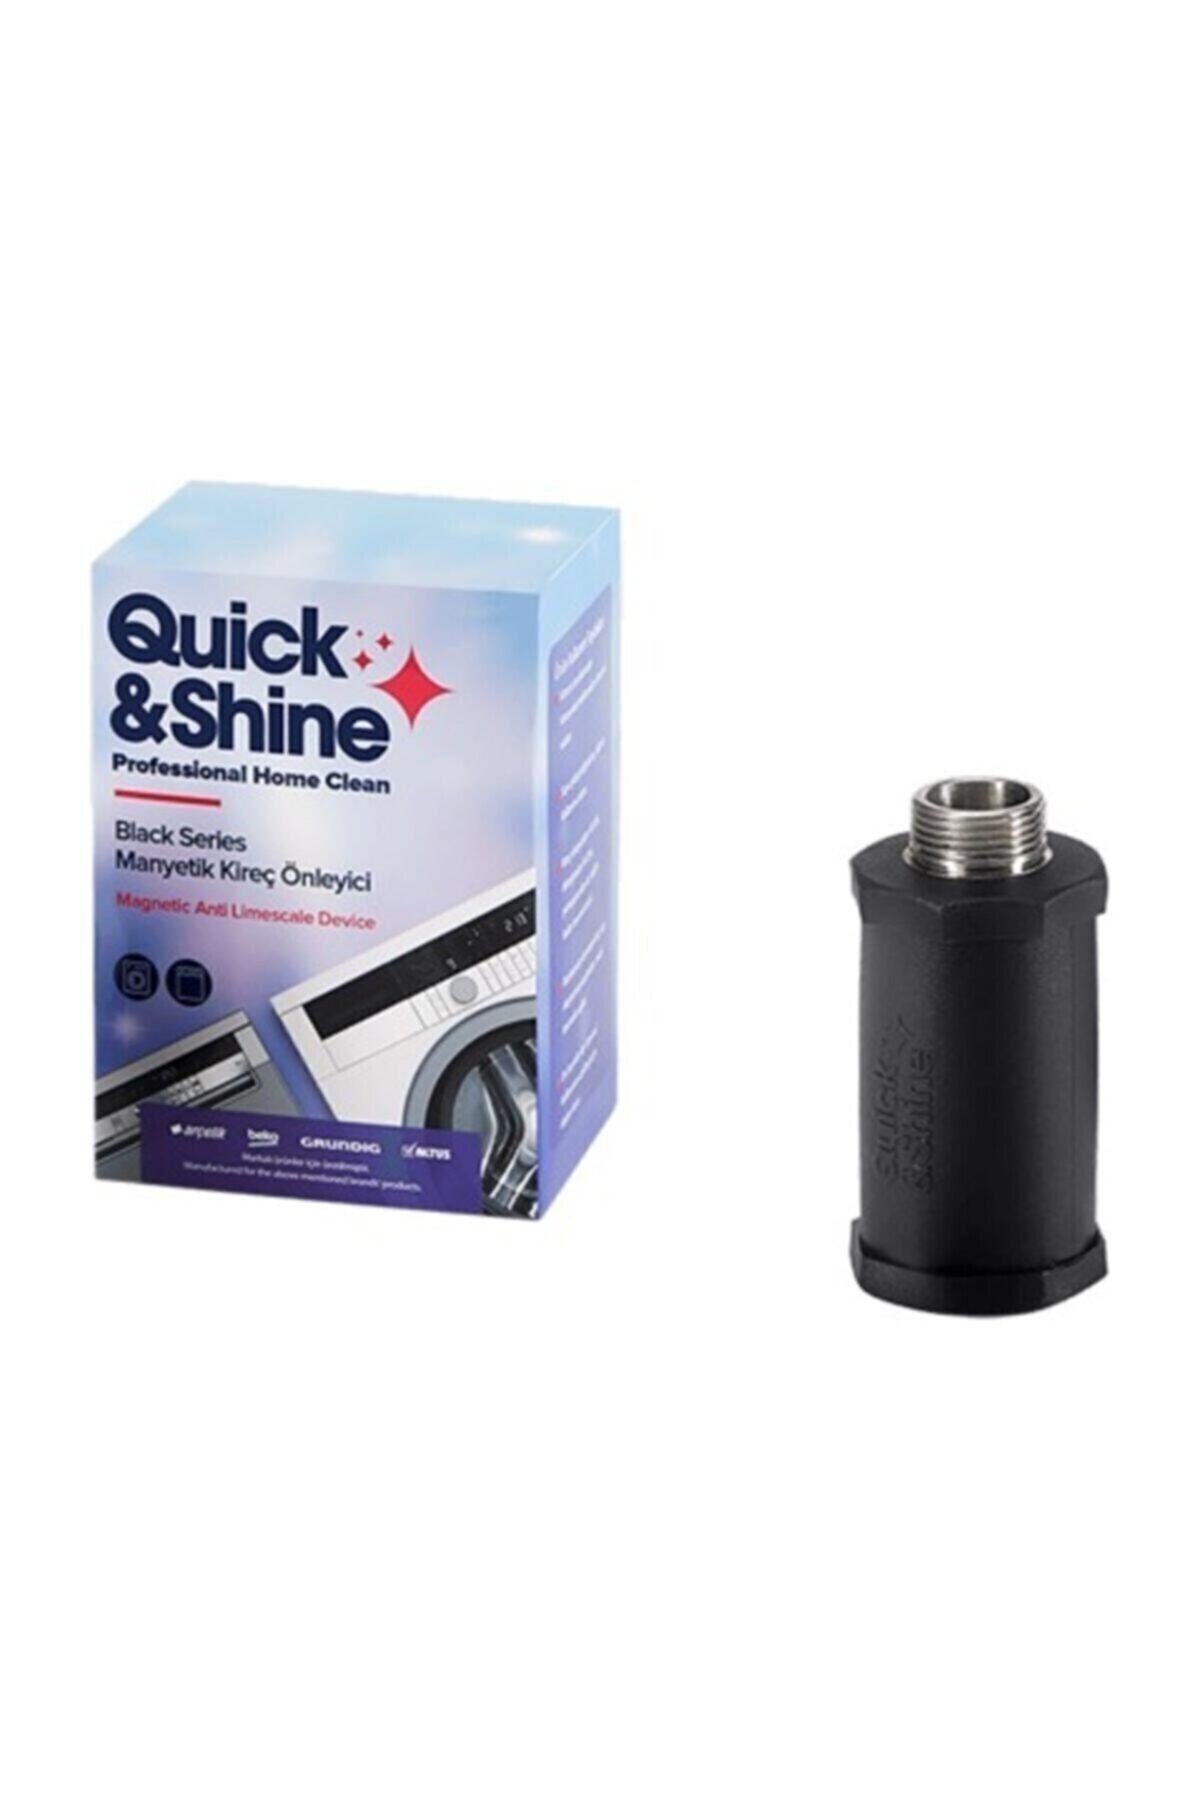 Quick&Shine Manyetik Kireç Önleyici Kırıcı 9197061837 Vk